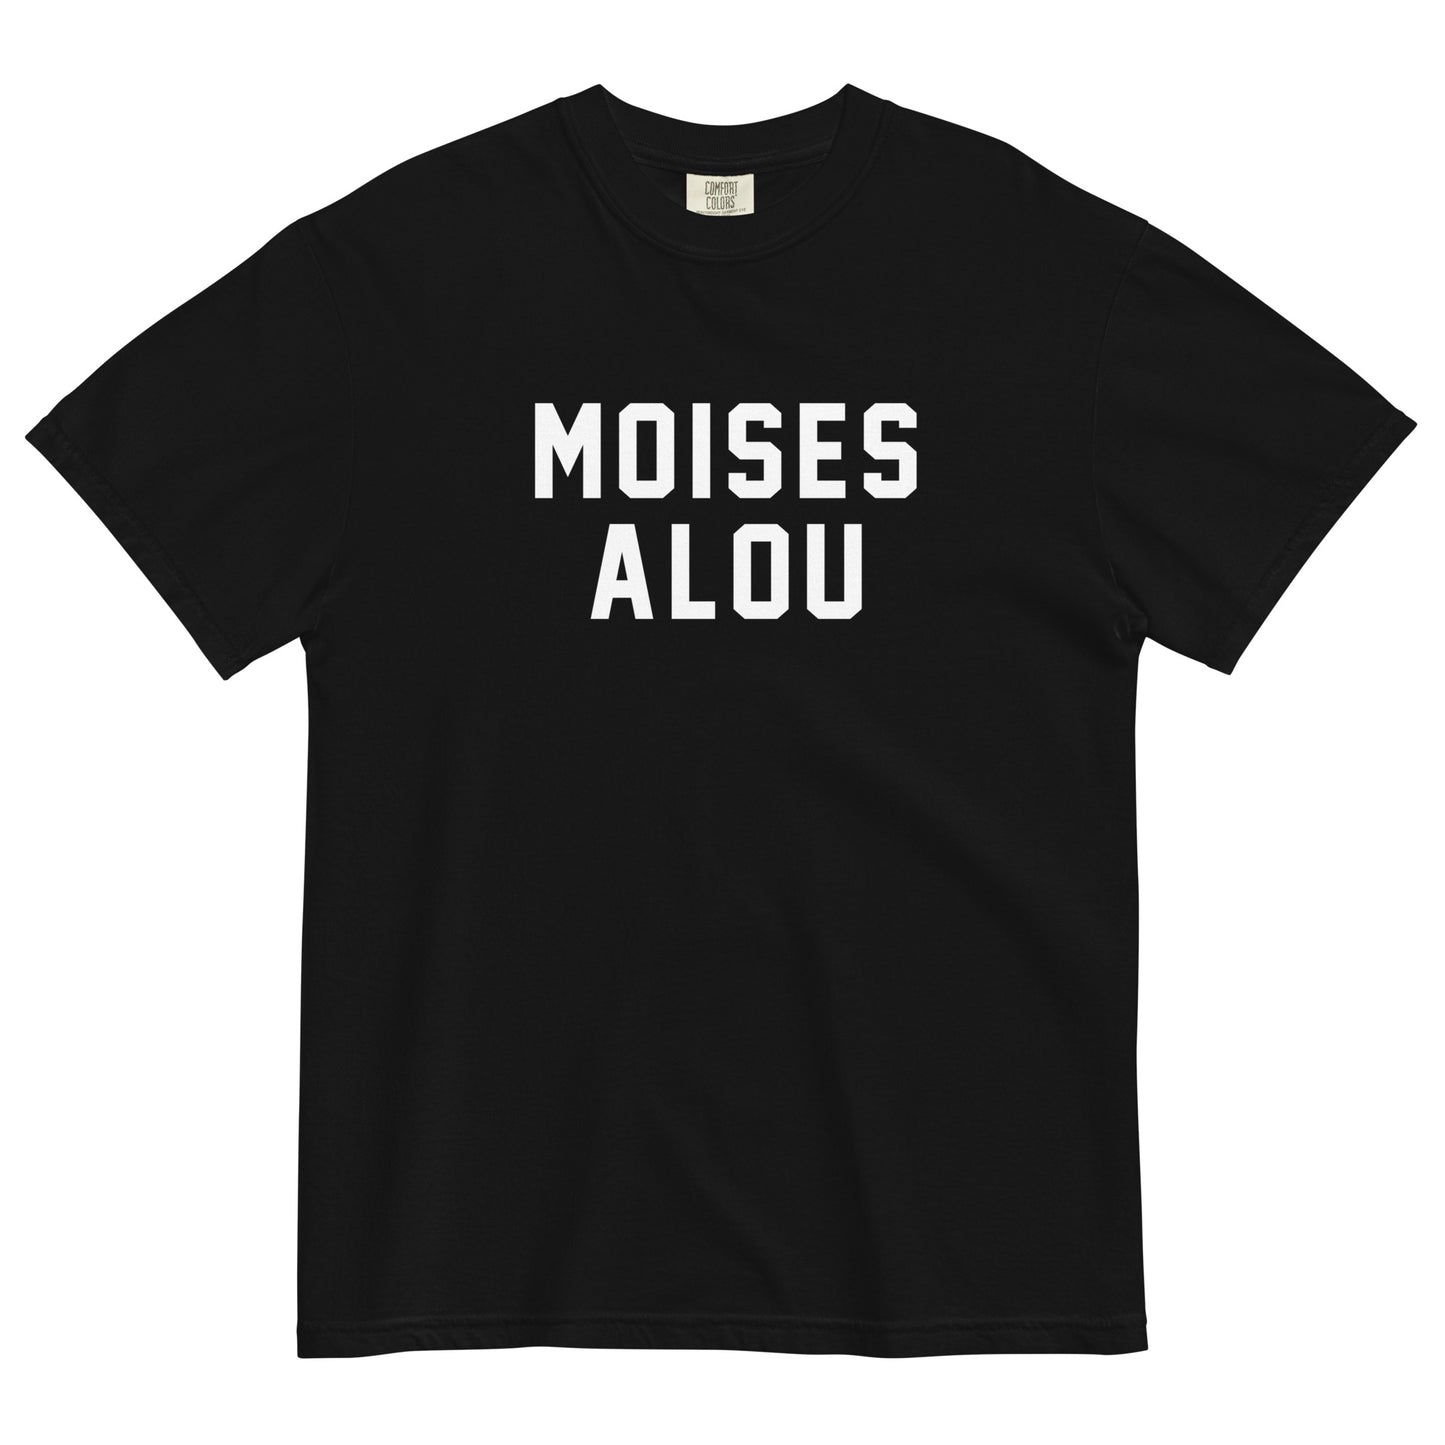 MOISES ALOU – Names on T-Shirts